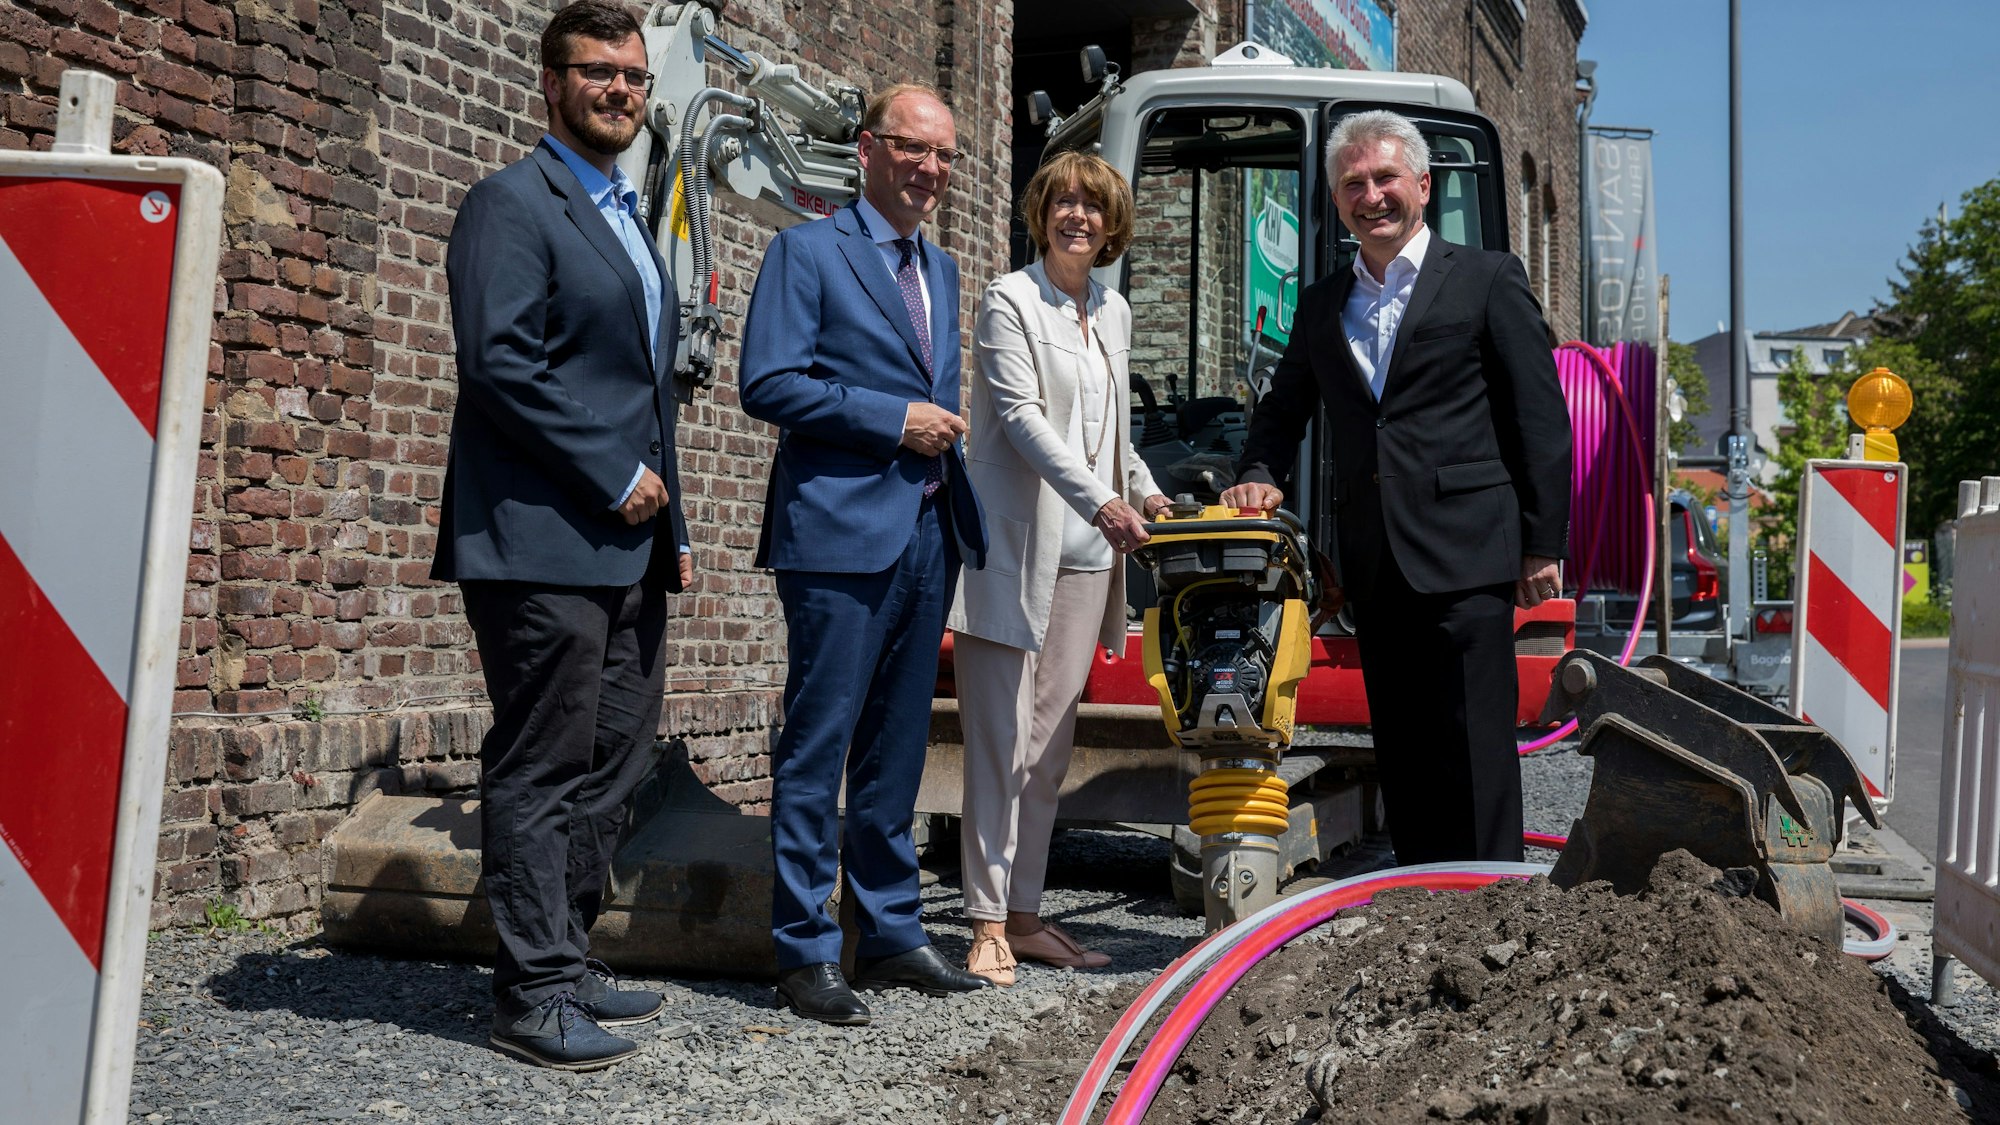 An einer Glasfaser-Baustelle in Köln stehen Fördermittel-Experte Michael Witte, Netcologne-Chef Timo von Lepel, Oberbürgermeisterin Henriette Reker und dem damaligen Wirtschaftsminister Andreas Pinkwart (FDP).